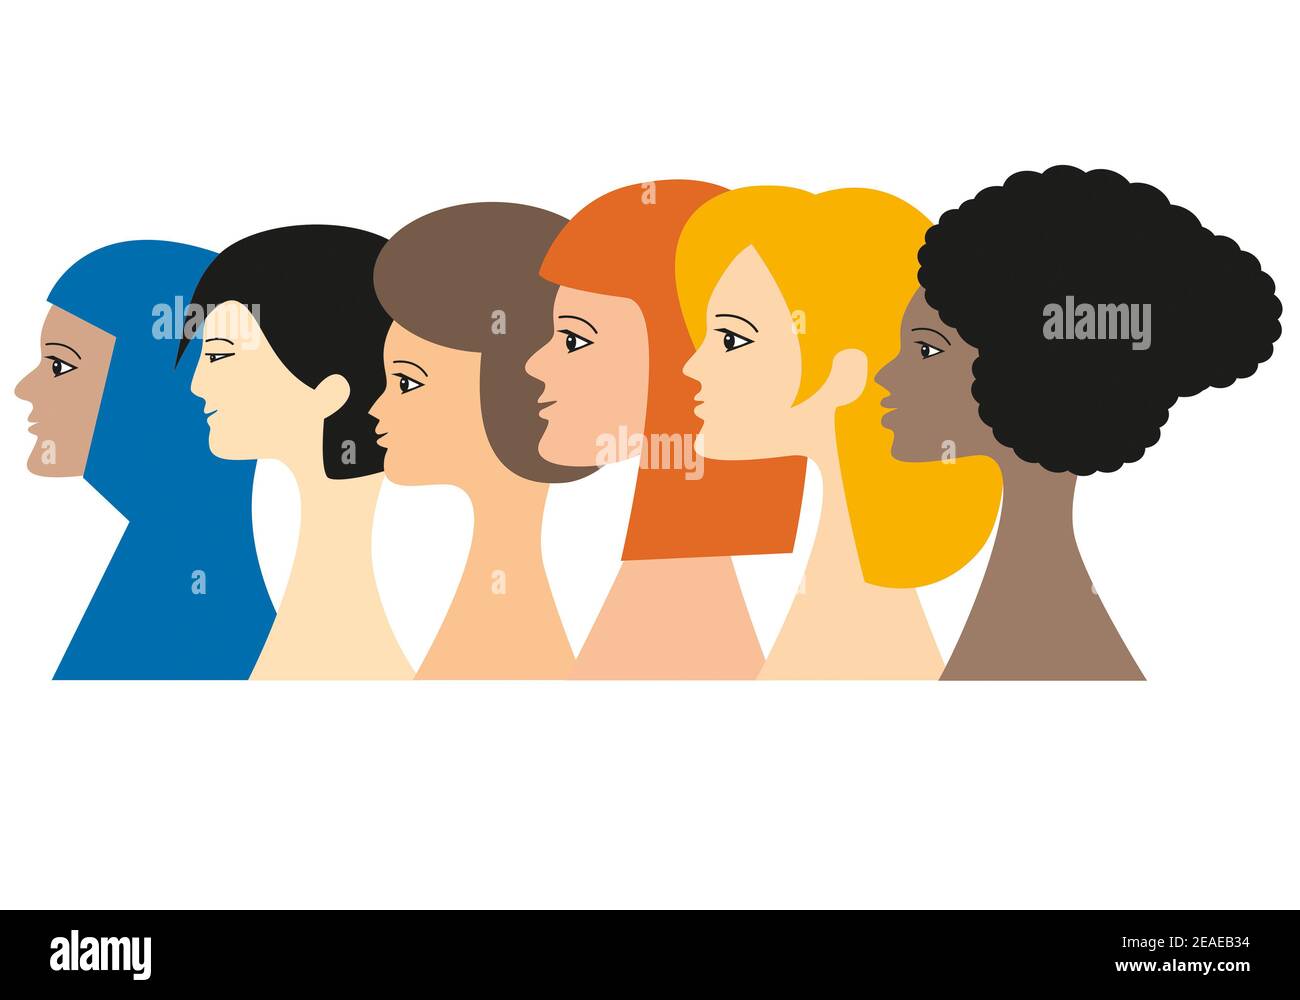 Porträts einer Gruppe von 6 Frauen, die die Kontinente der Welt repräsentieren. Konzept der multiethnischen Vielfalt. Abbildung isoliert auf weißem Hintergrund. Stockfoto